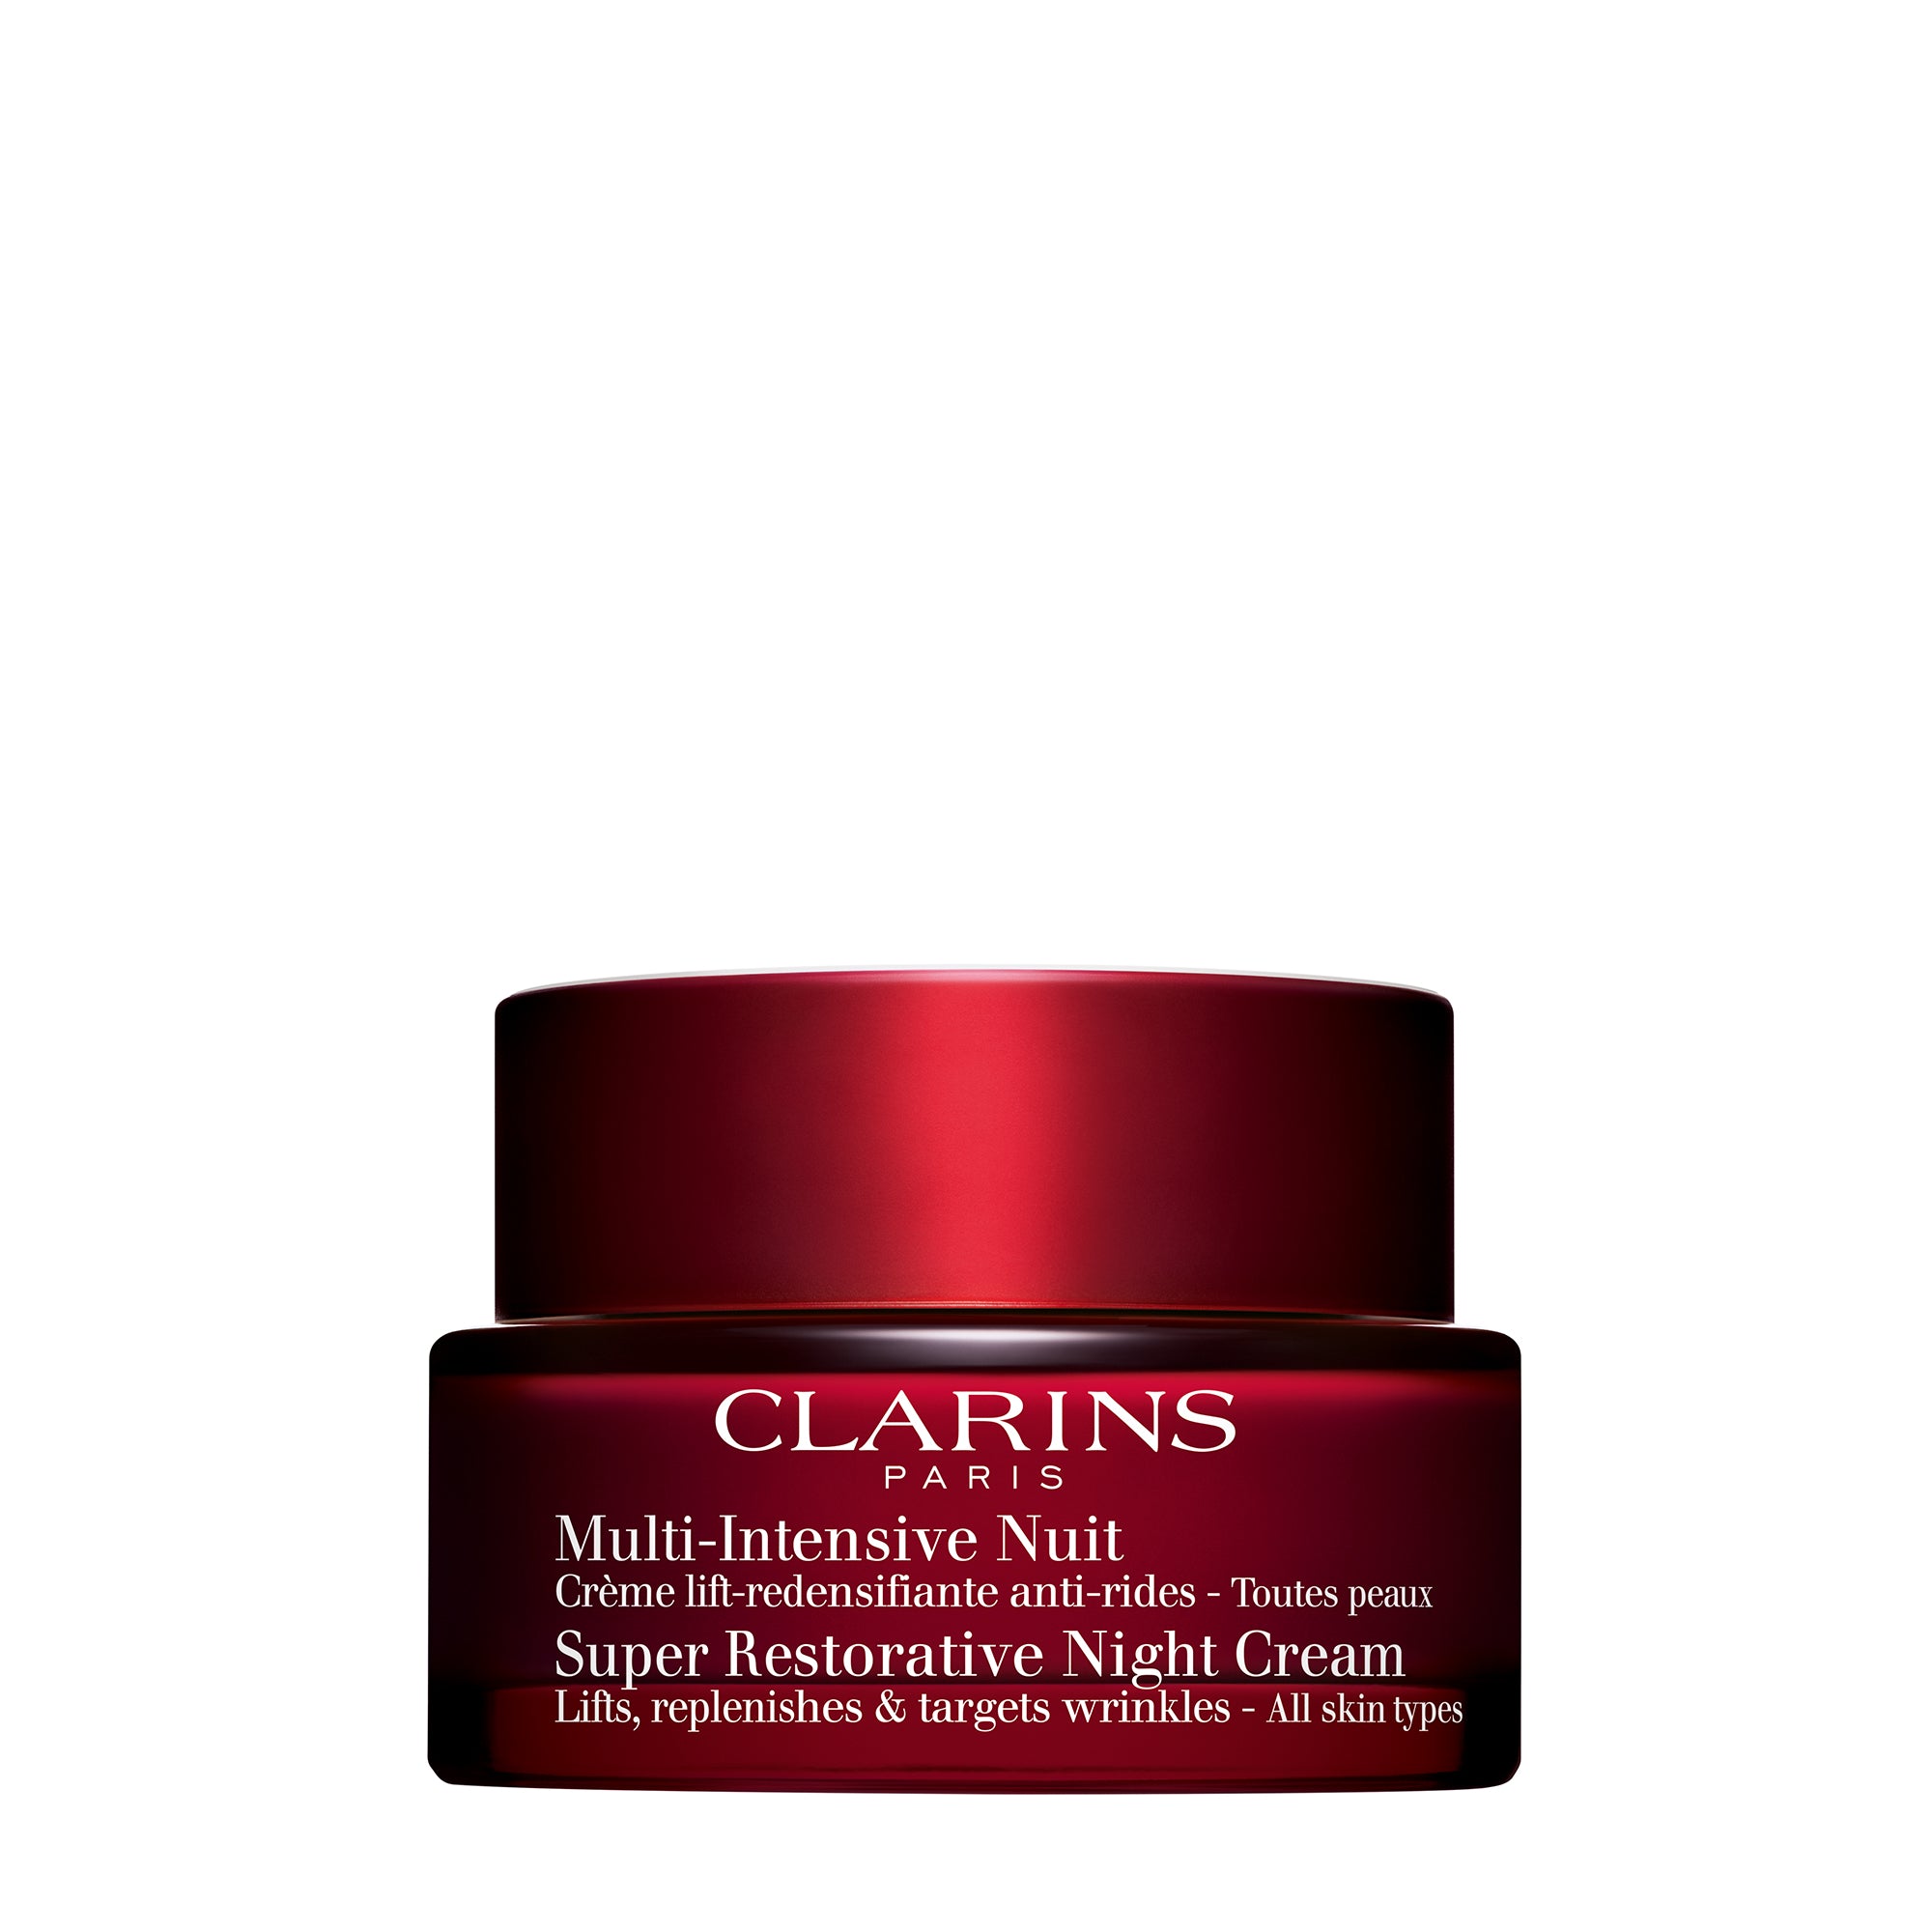 Clarins Super Restorative Night Cream AST 50ml Image